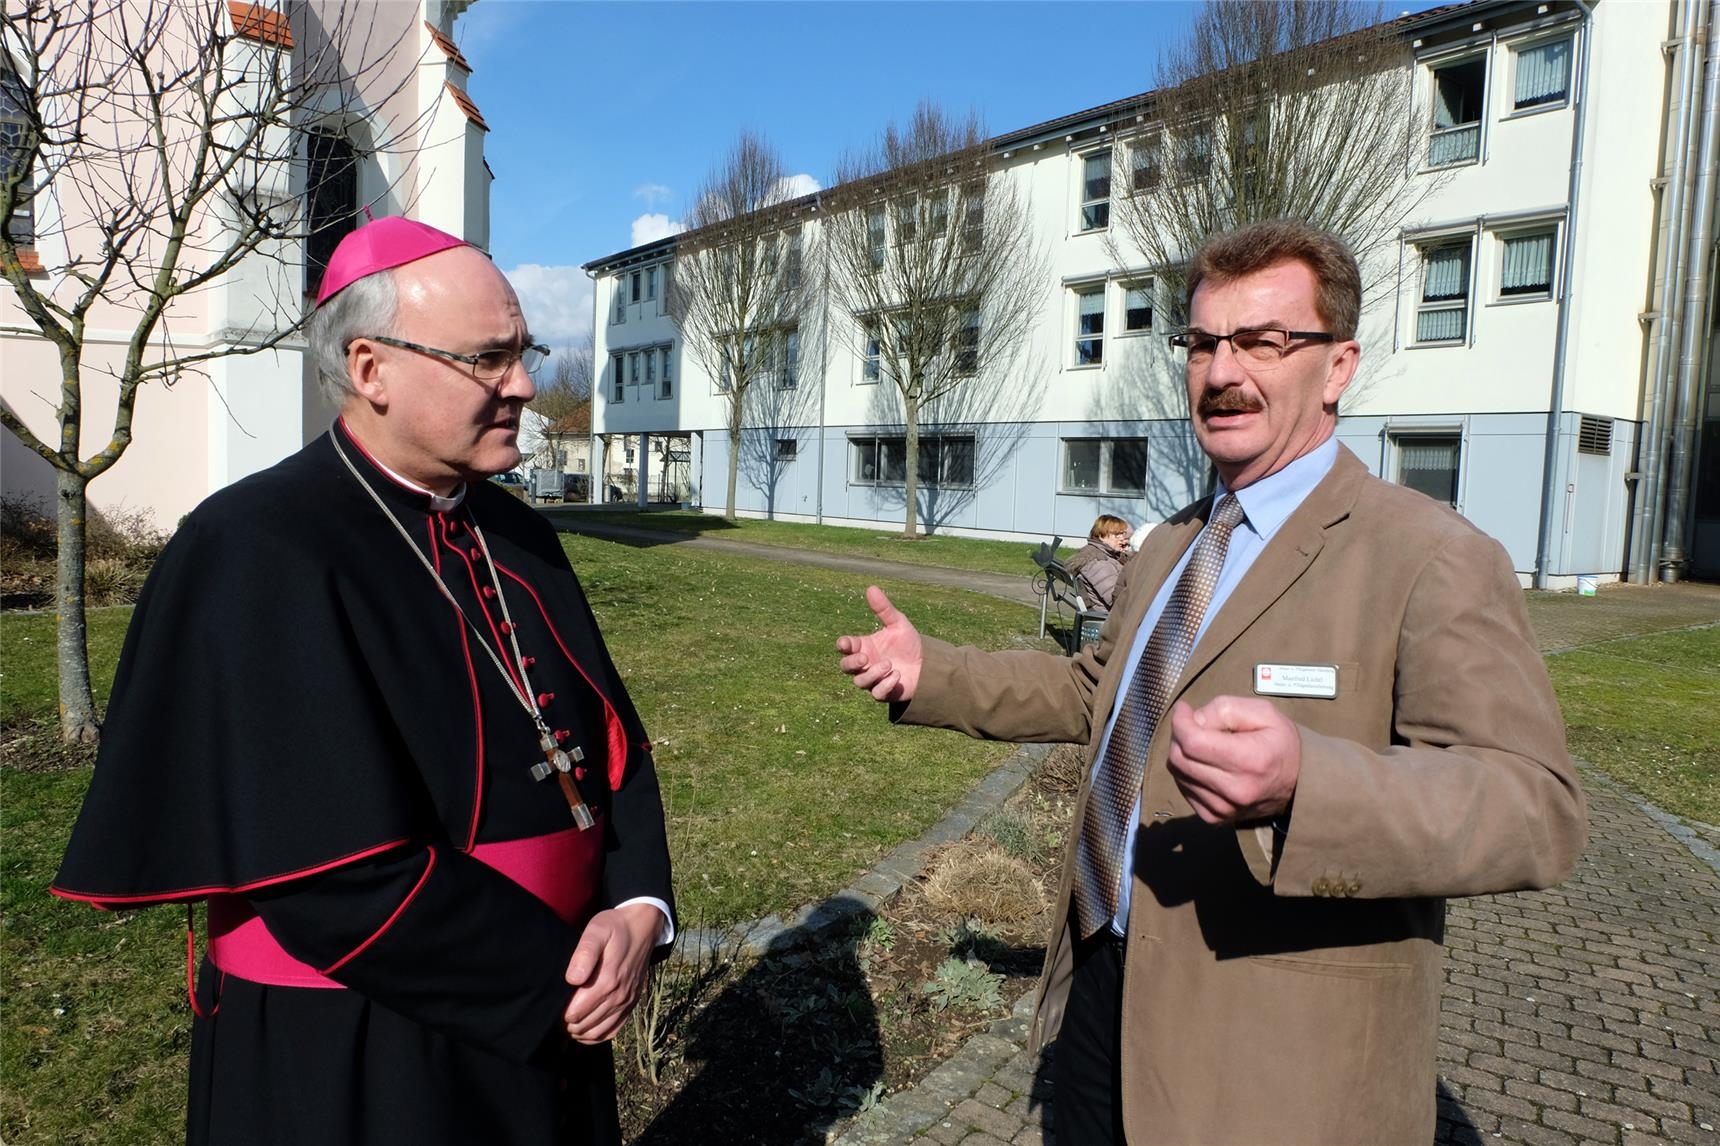 Zum Abschluss des Besuchs in Sünching zeigte Heimleiter Manfred Lichtl dem Bischof die Außenanlagen des Hauses. 62 Bewohner haben in 9 Doppel- und 44 Einzelzimmern ein Zuhause. 